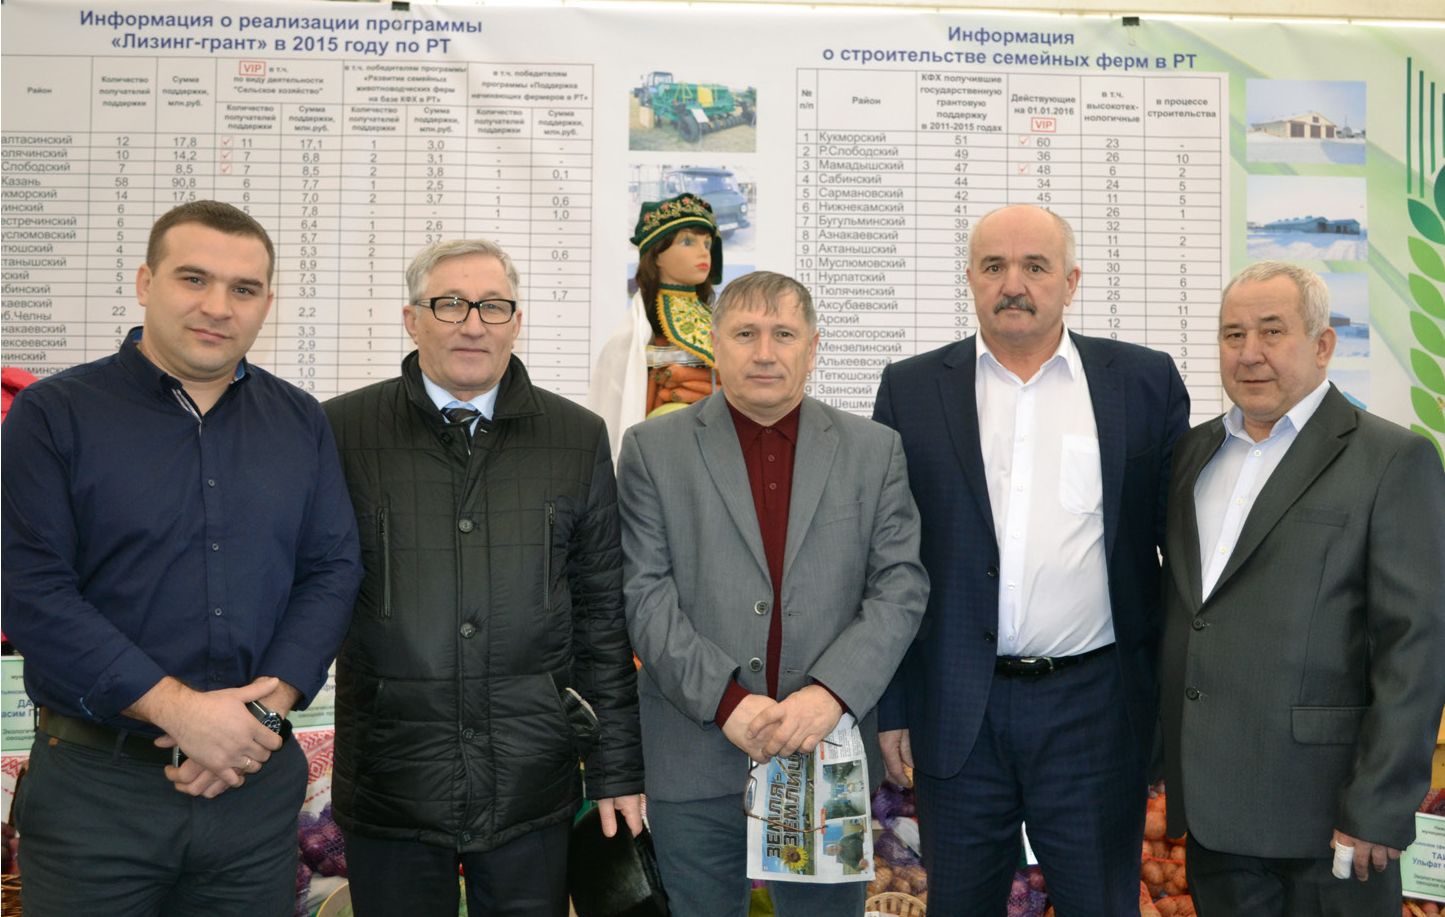 Камияр Байтемиров: «Для развития АПК необходима кооперация между сельхозпроизводителями, перерабатывающими и логистическими компаниями»